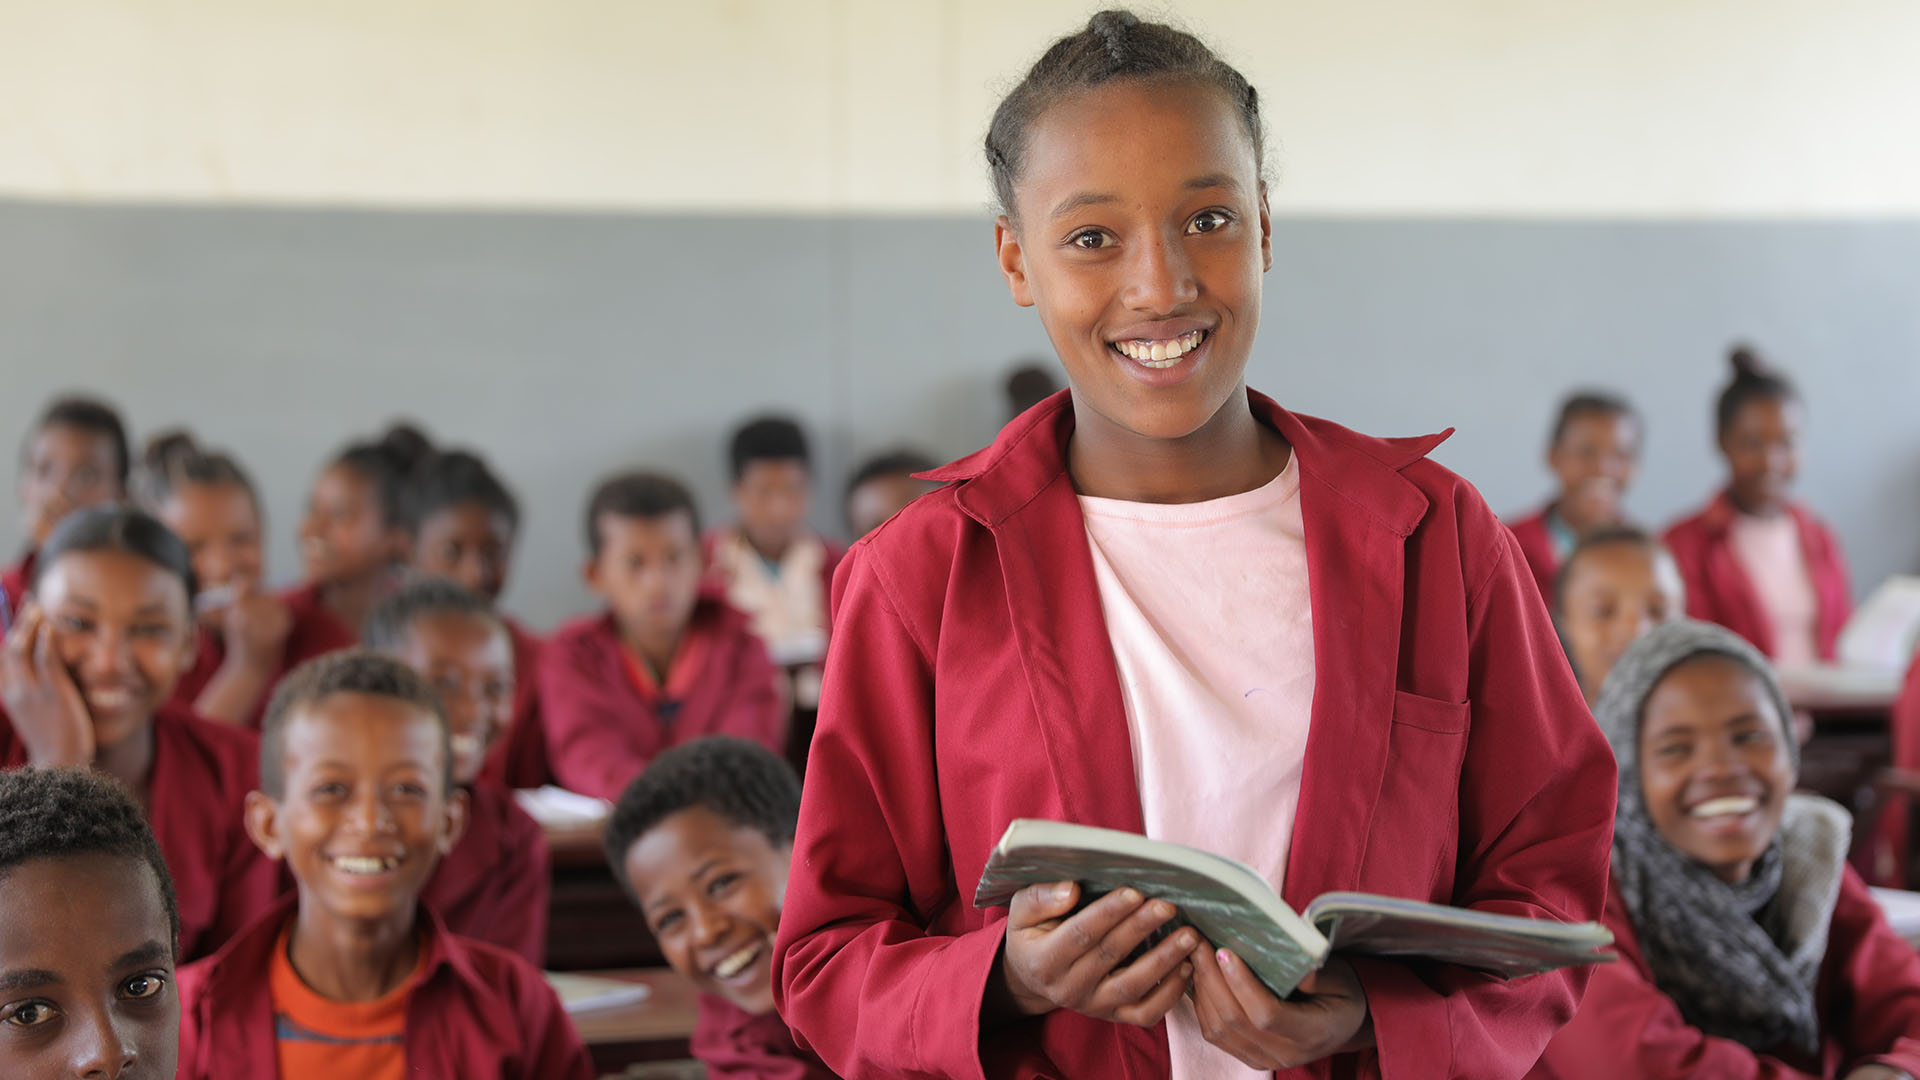 Eine äthiopische Schülerin lächelt mit einem offenen Buch in die Kamera